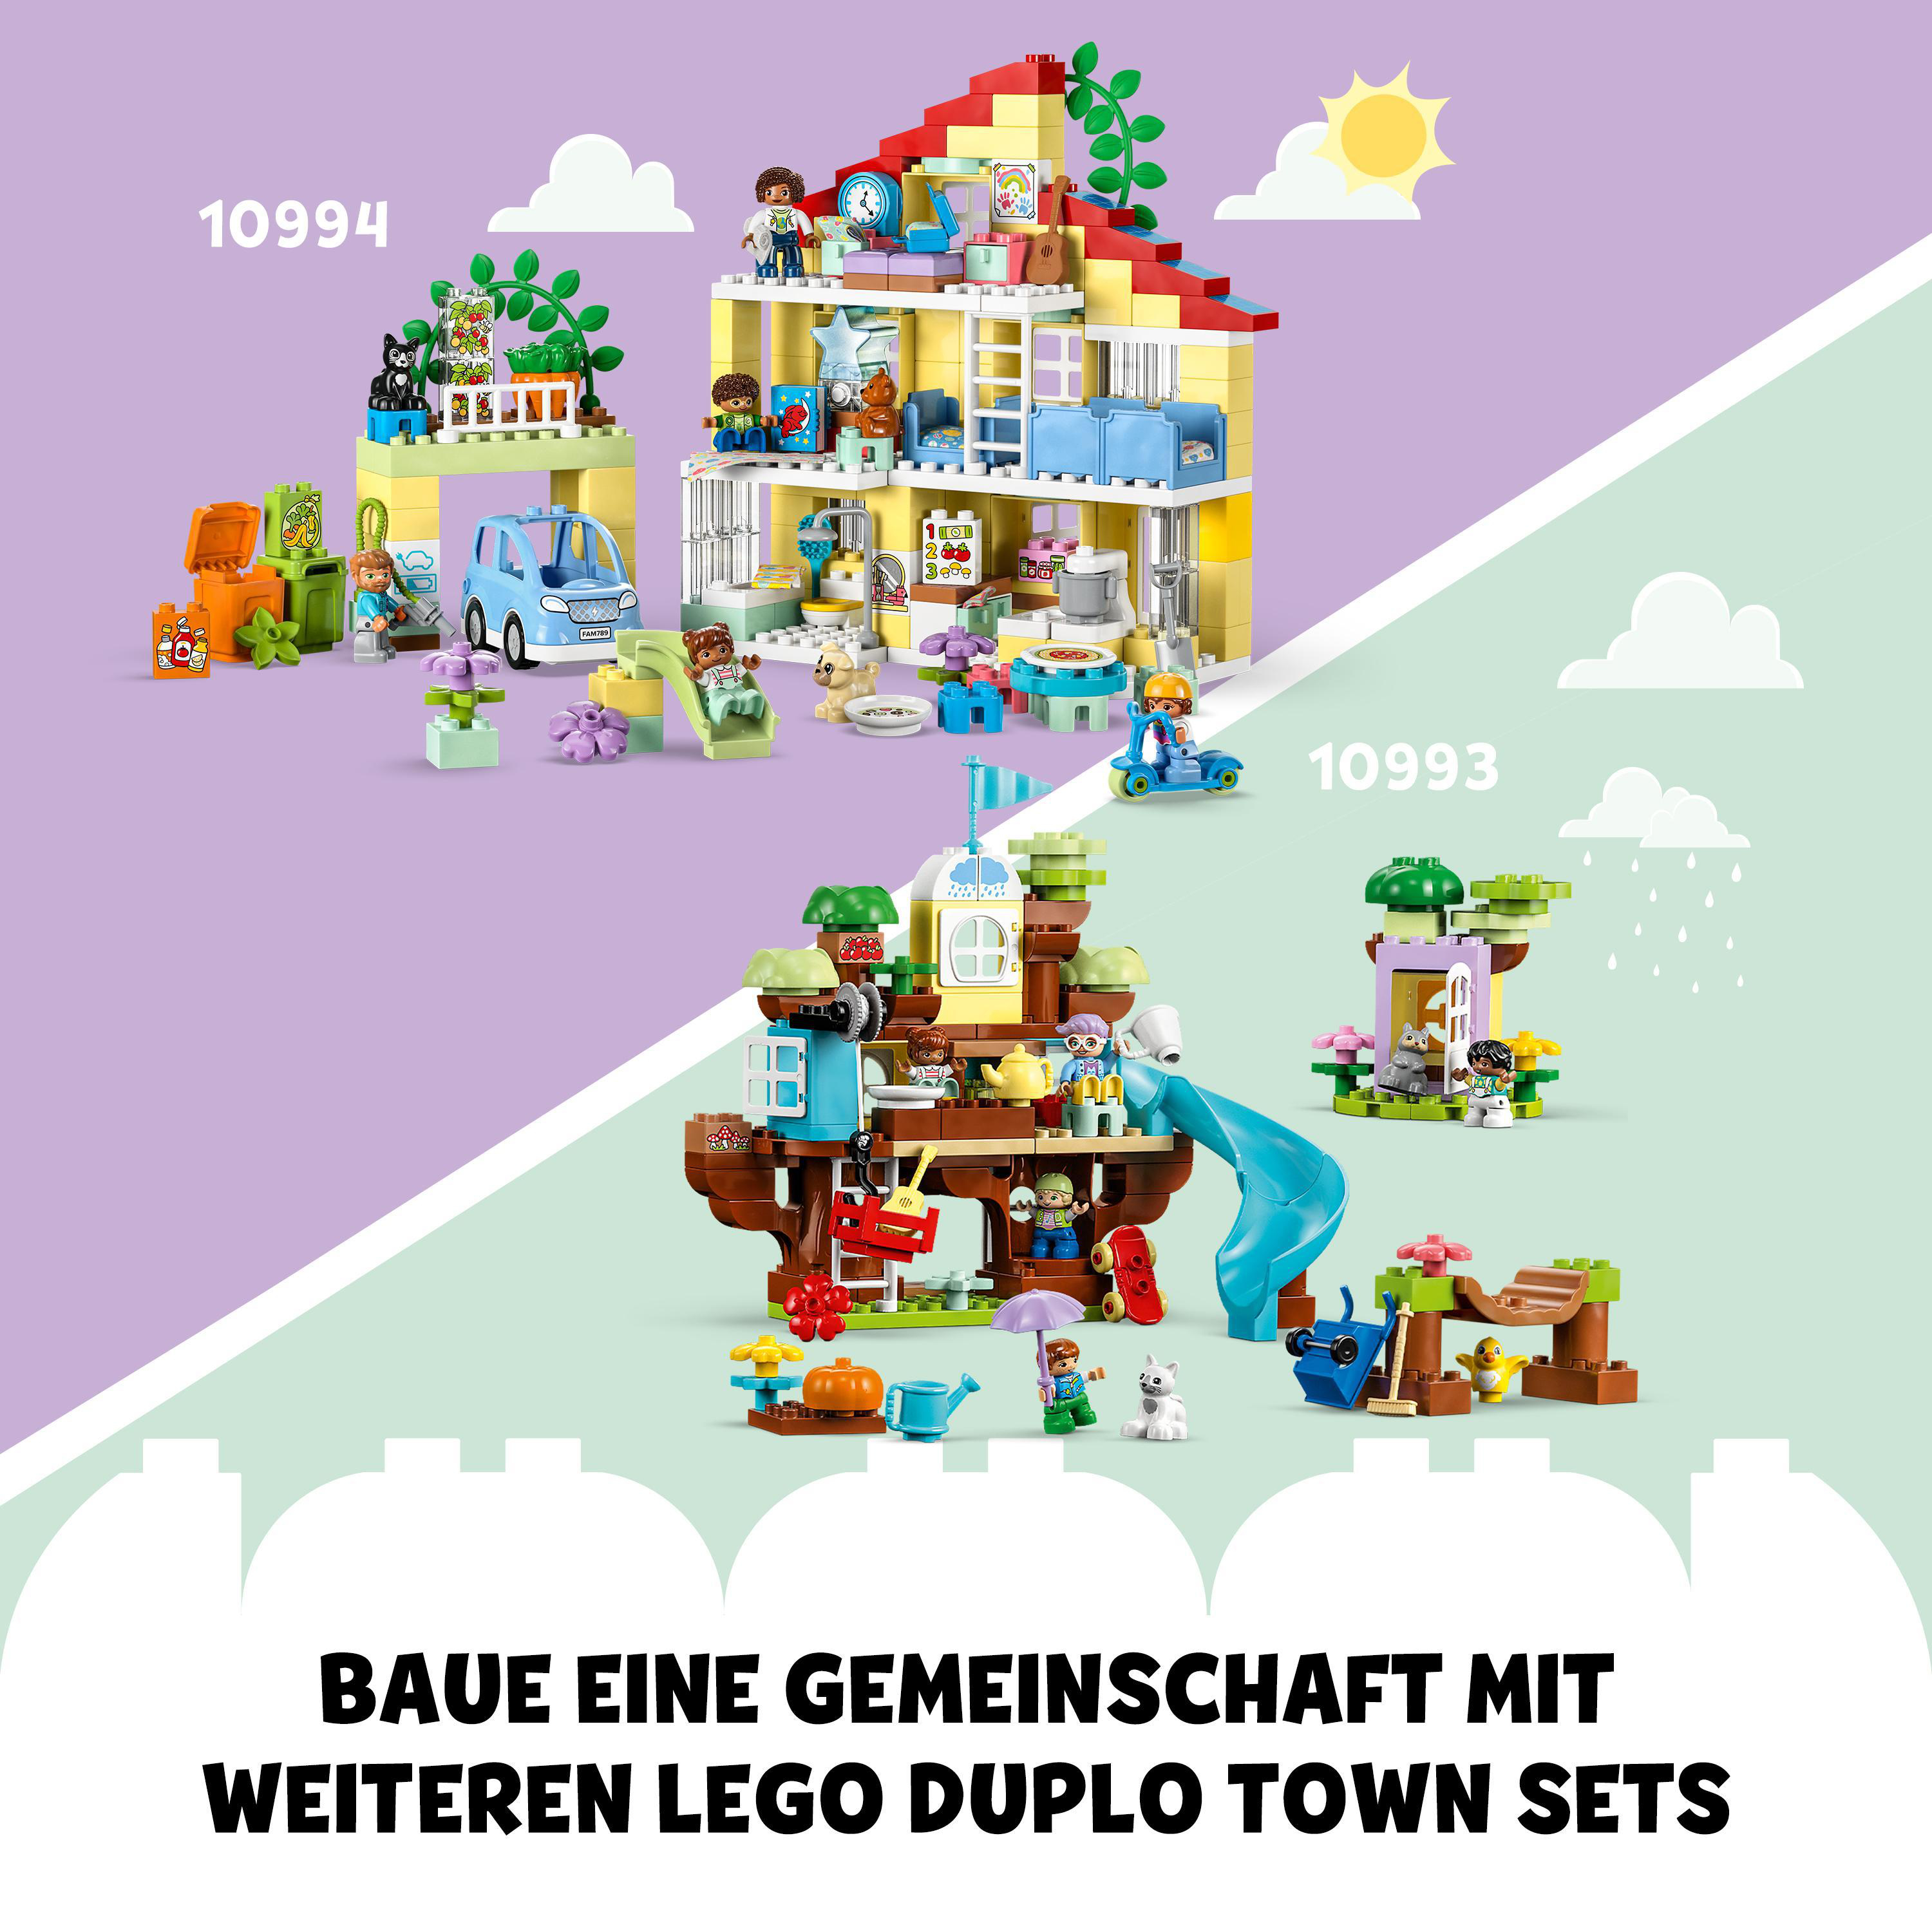 LEGO 3-in-1-Familienhaus 10994 DUPLO Bausatz, Mehrfarbig